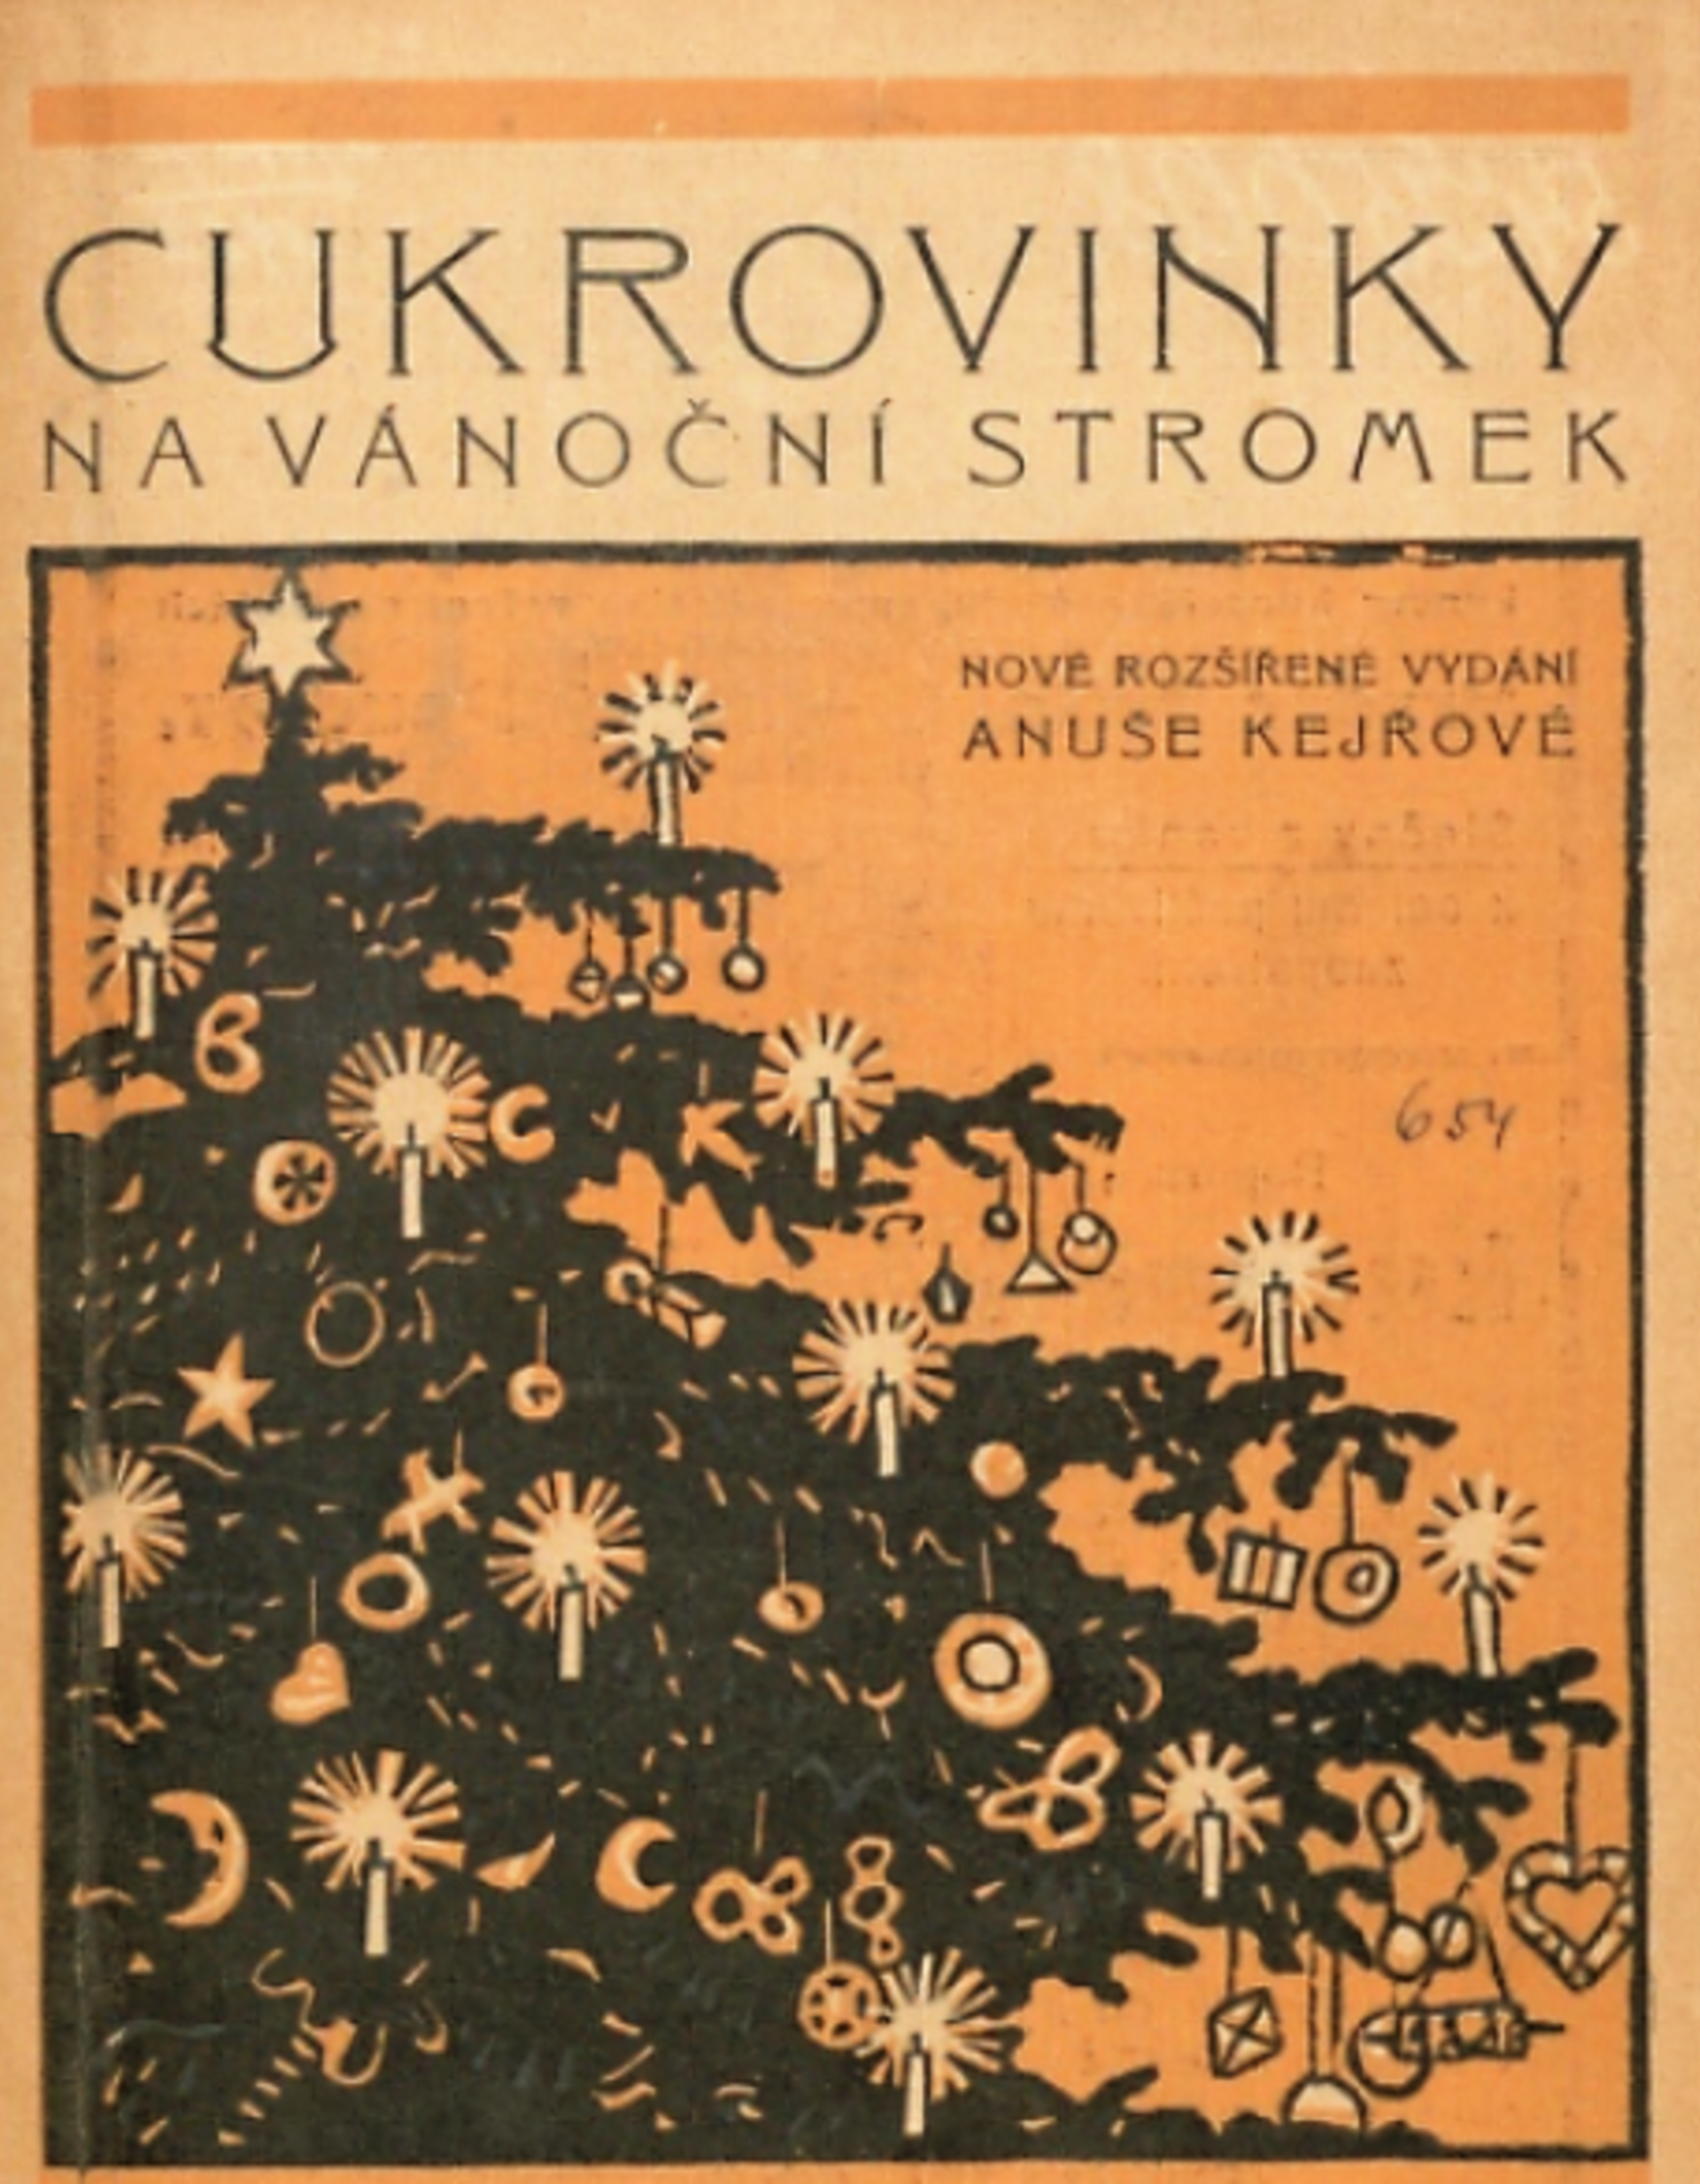 Cukrovinky na vánoční stromek, Mladá Boleslav, 1920. Zdroj Kramerius, Národní knihovna v Praze.